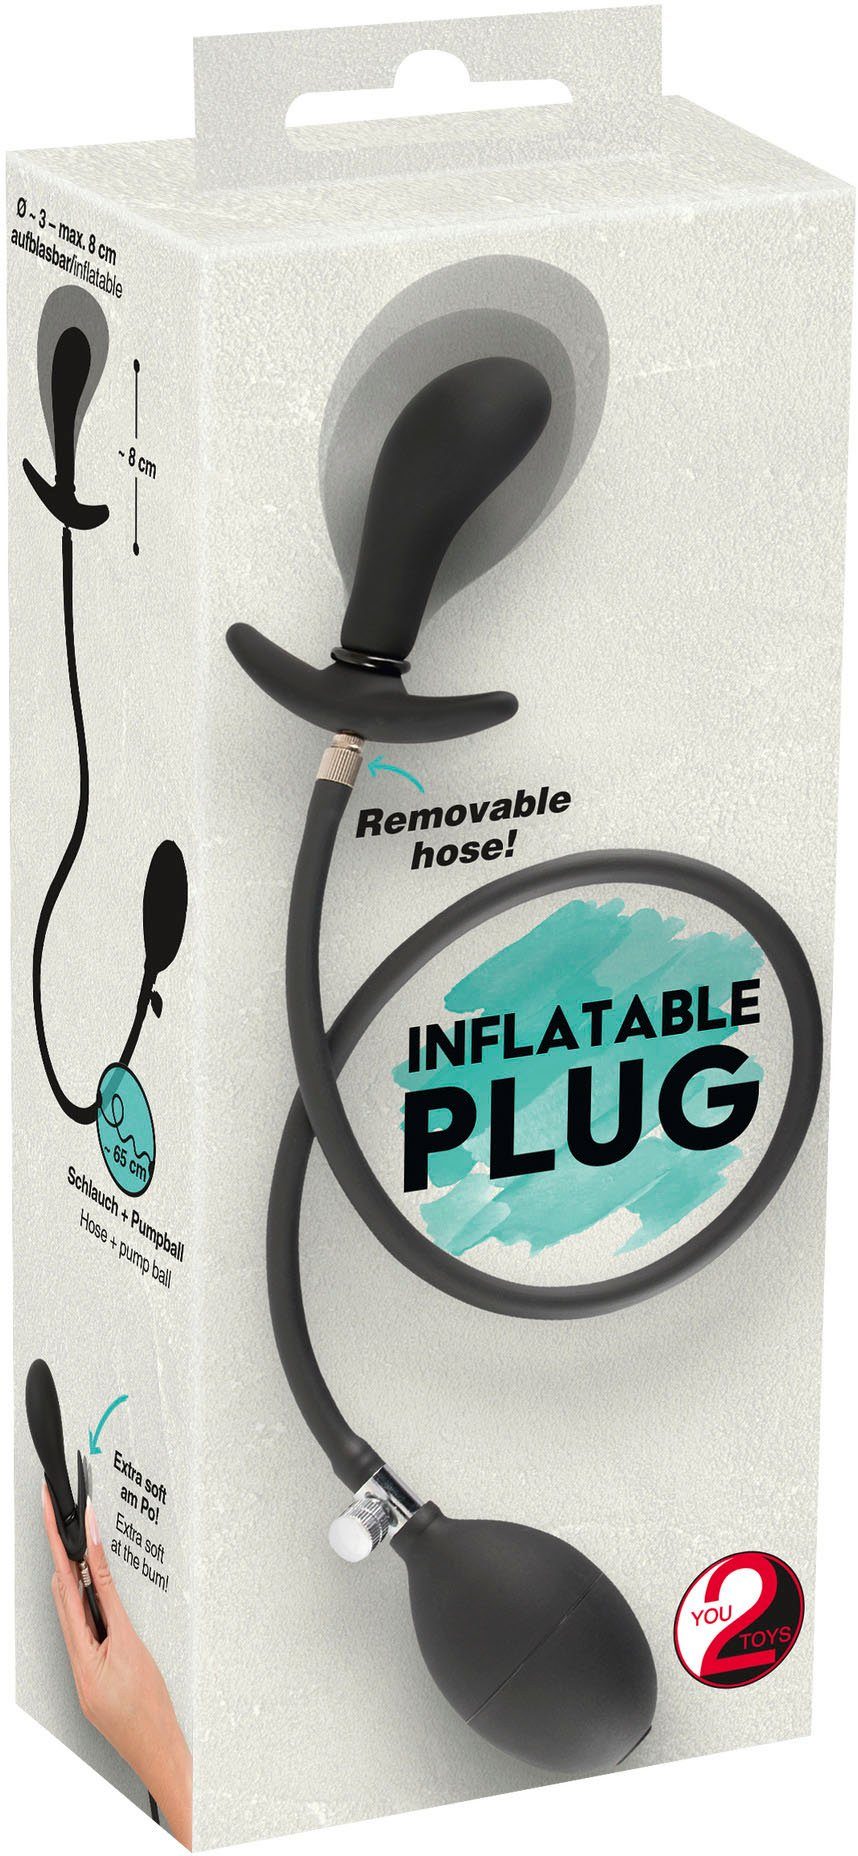 Plug Inflatable You2Toys Analballon